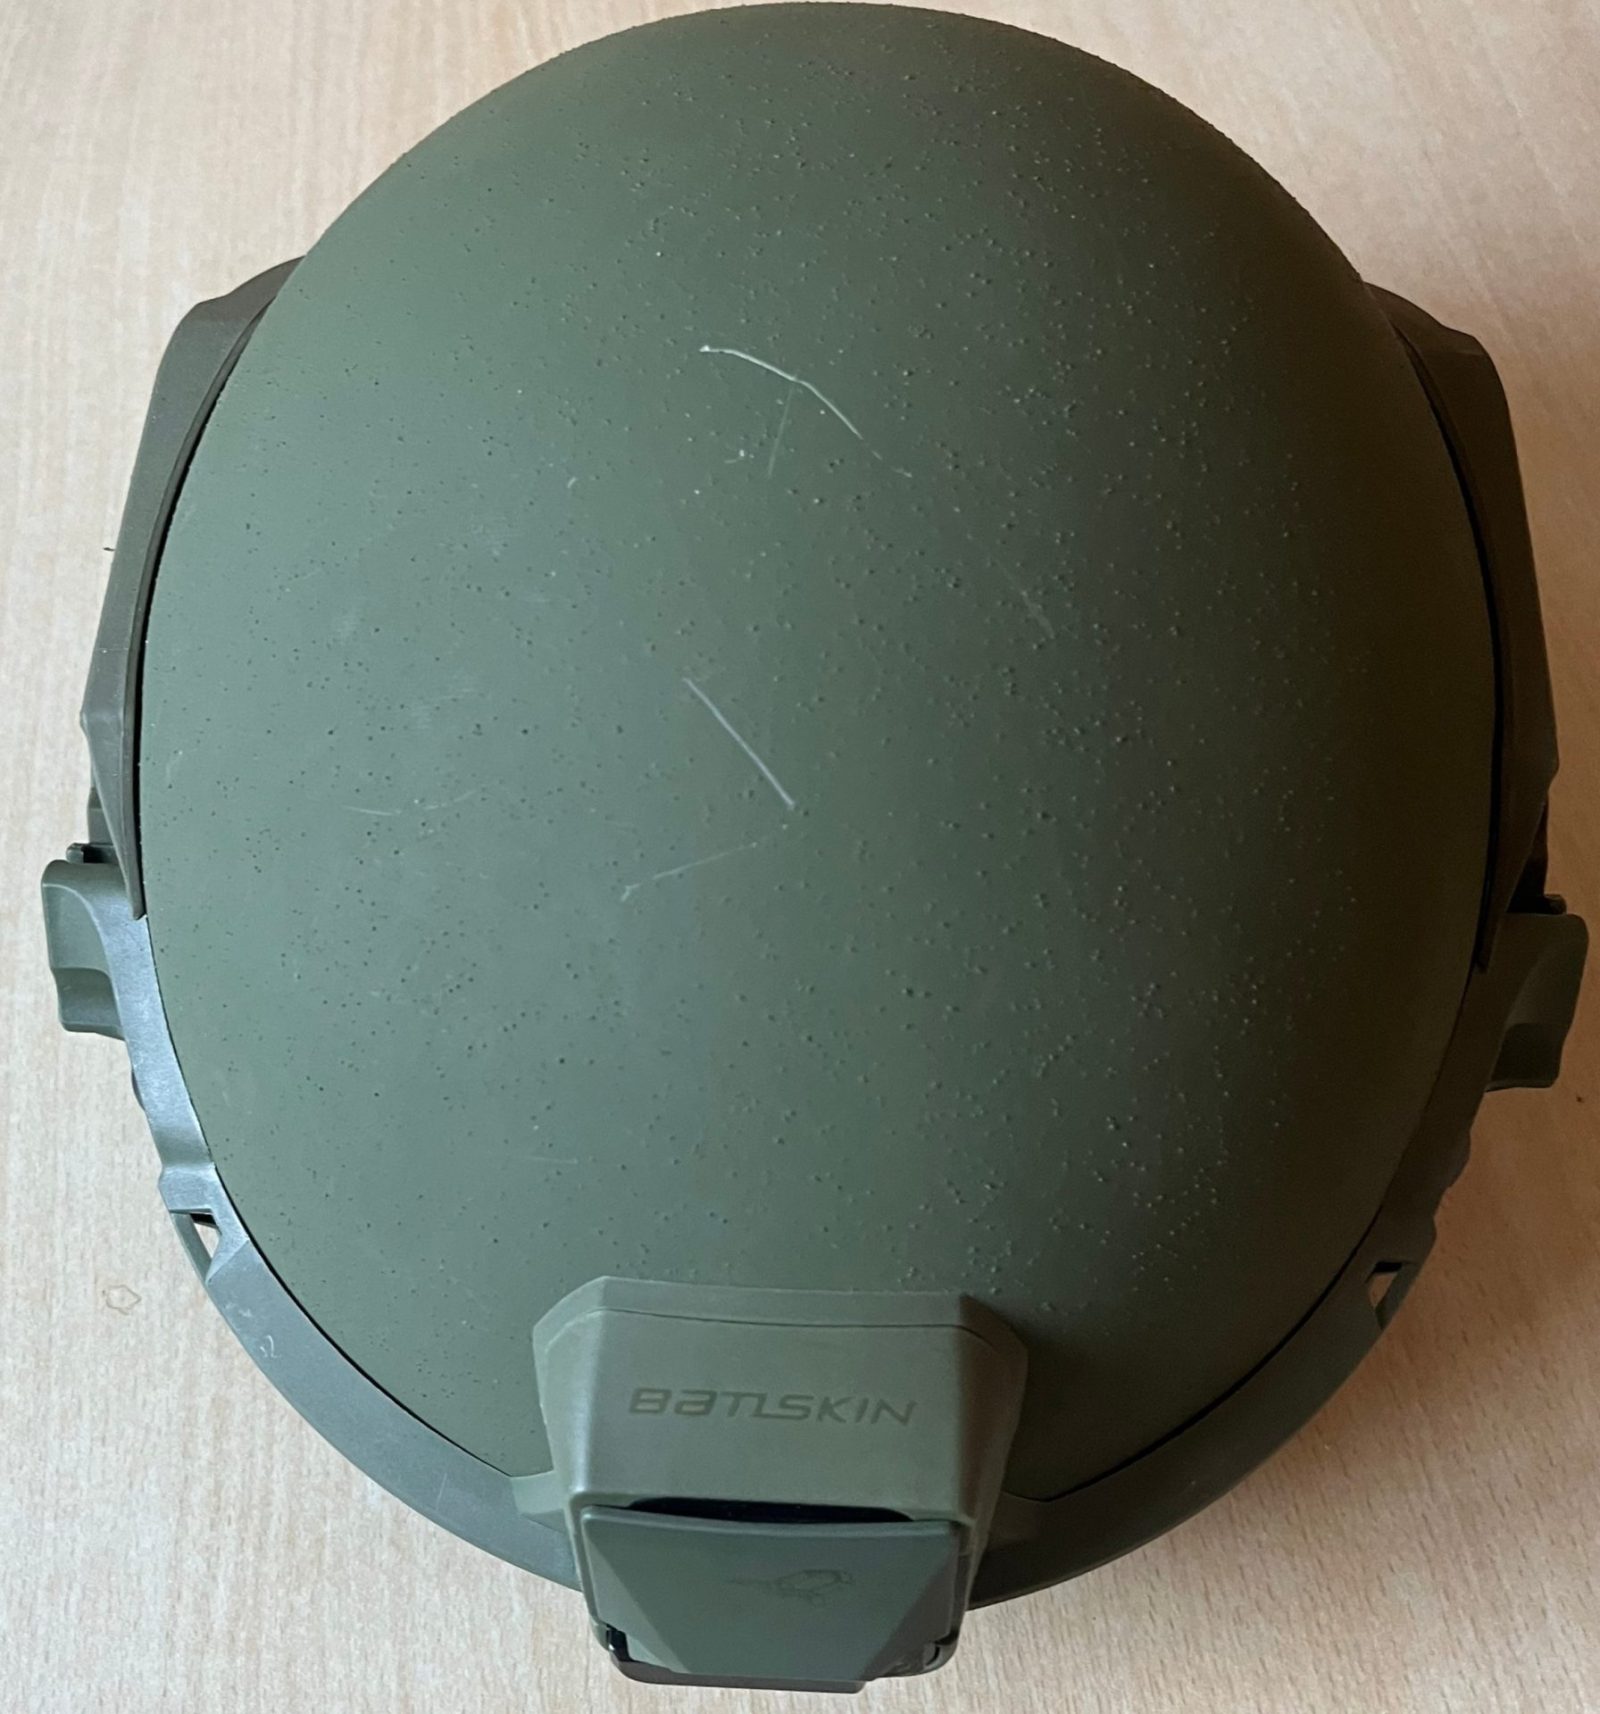 Beschaedigter Helm ohne Helmueberzug Foto Soldat und Technik e1658304456149